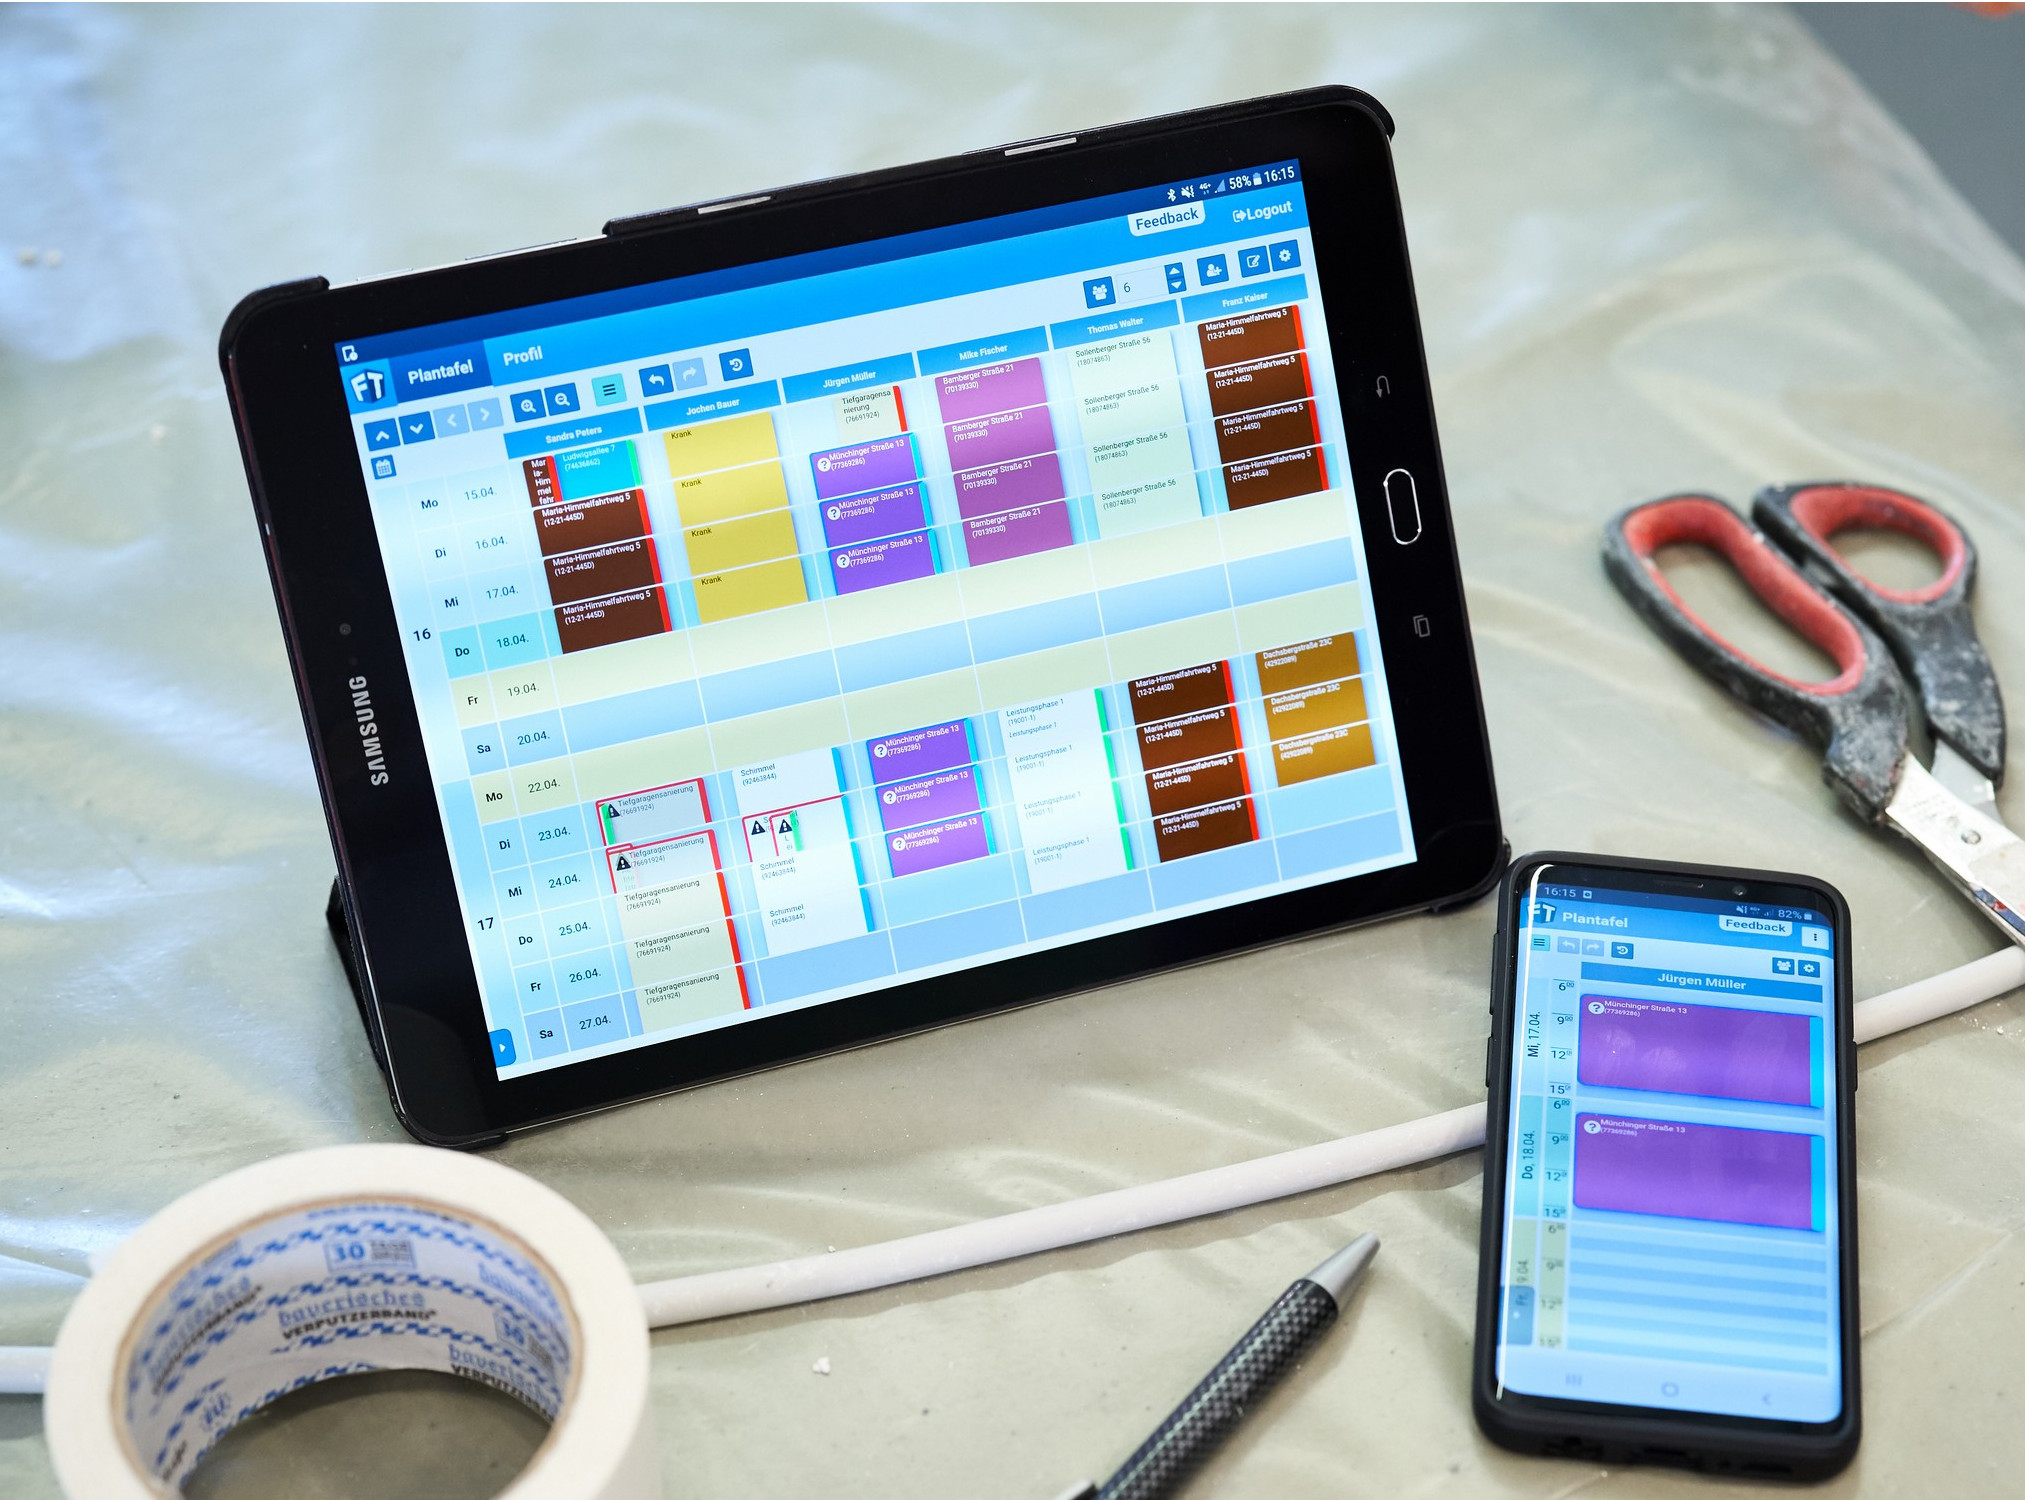 FiliTime Digitale Plantafel Tablet Smartphone Wochen- und Tagesansicht richtig nutzen